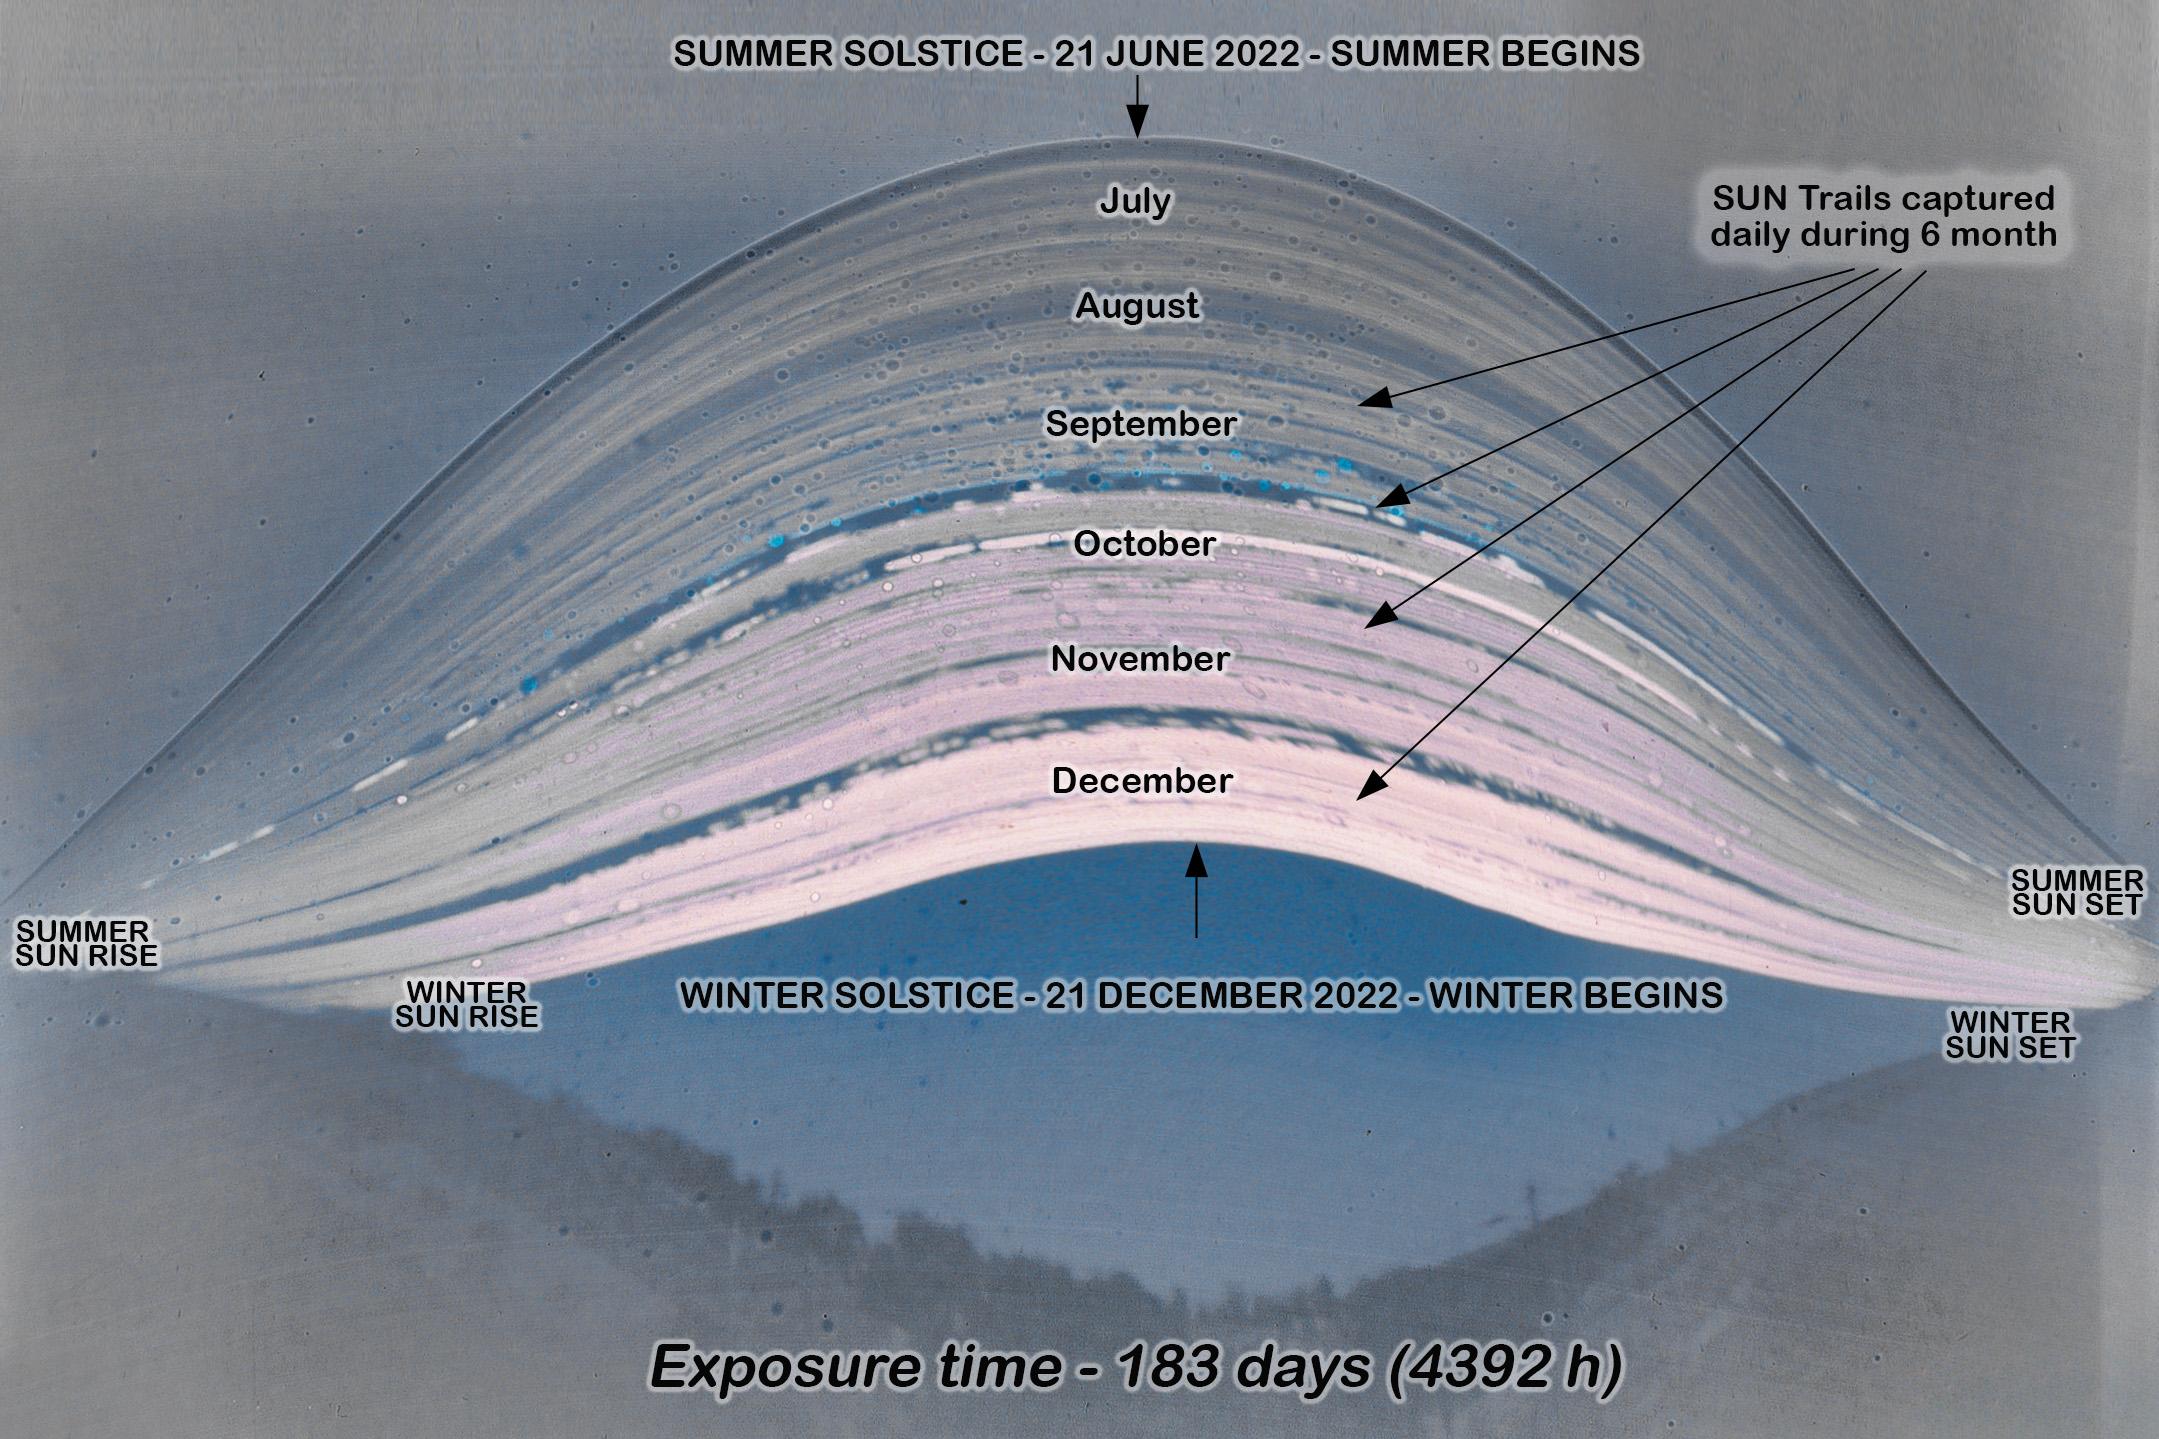 مسارات الشمس متراكبة في صورة شمسيّة طويلة التعريض تظهر تغير عبور الشمس في السماء على مدى ستّة أشهر، مع عناوين بالانگليزيّة